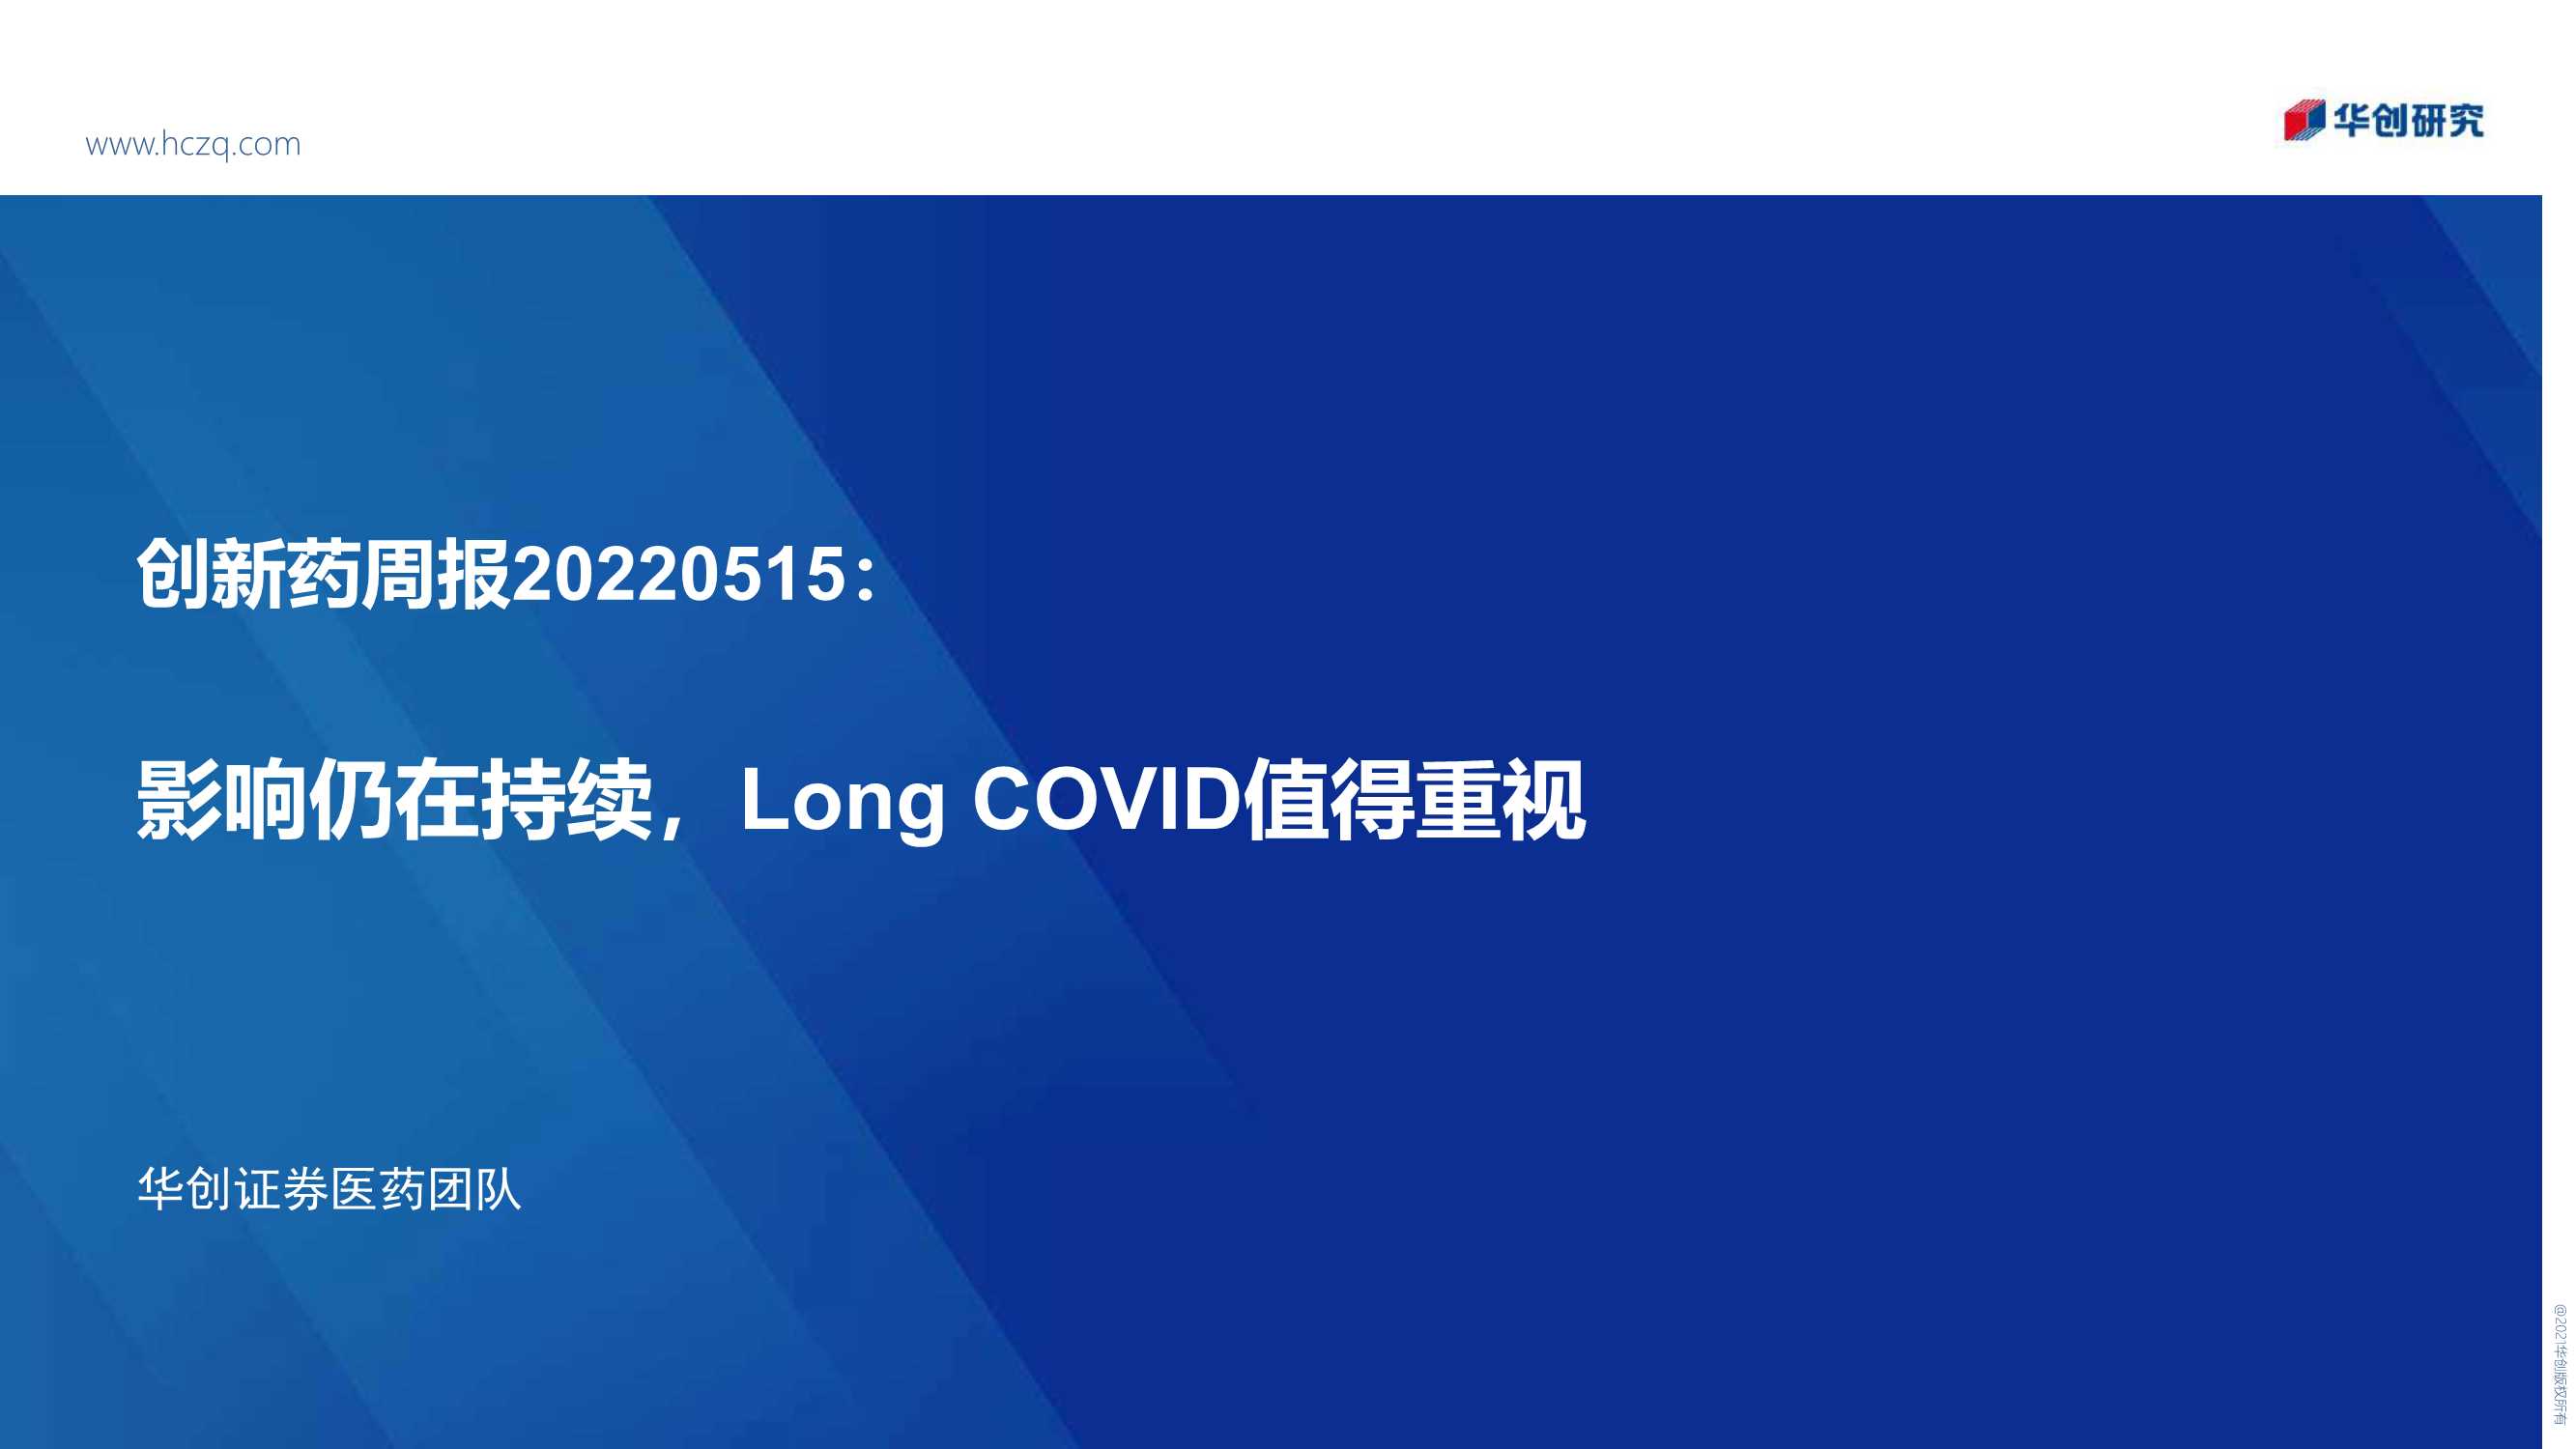 医药行业创新药周报：影响仍在持续，Long COVID值得重视-20220515-华创证券-31页